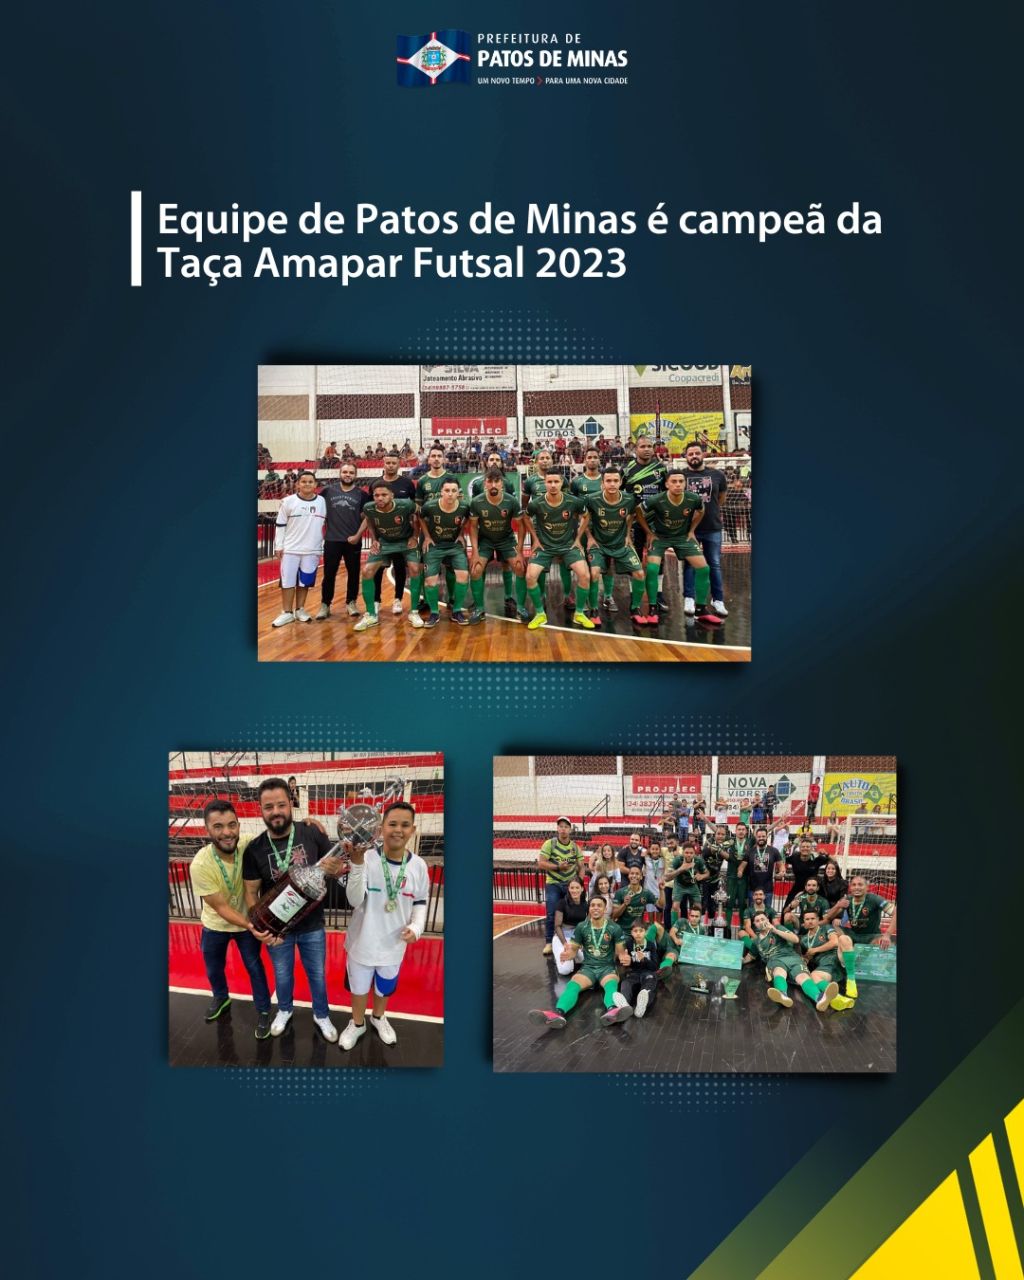 Equipe de Patos de Minas vence Patrocínio na final da Taça Amapar Futsal 2023